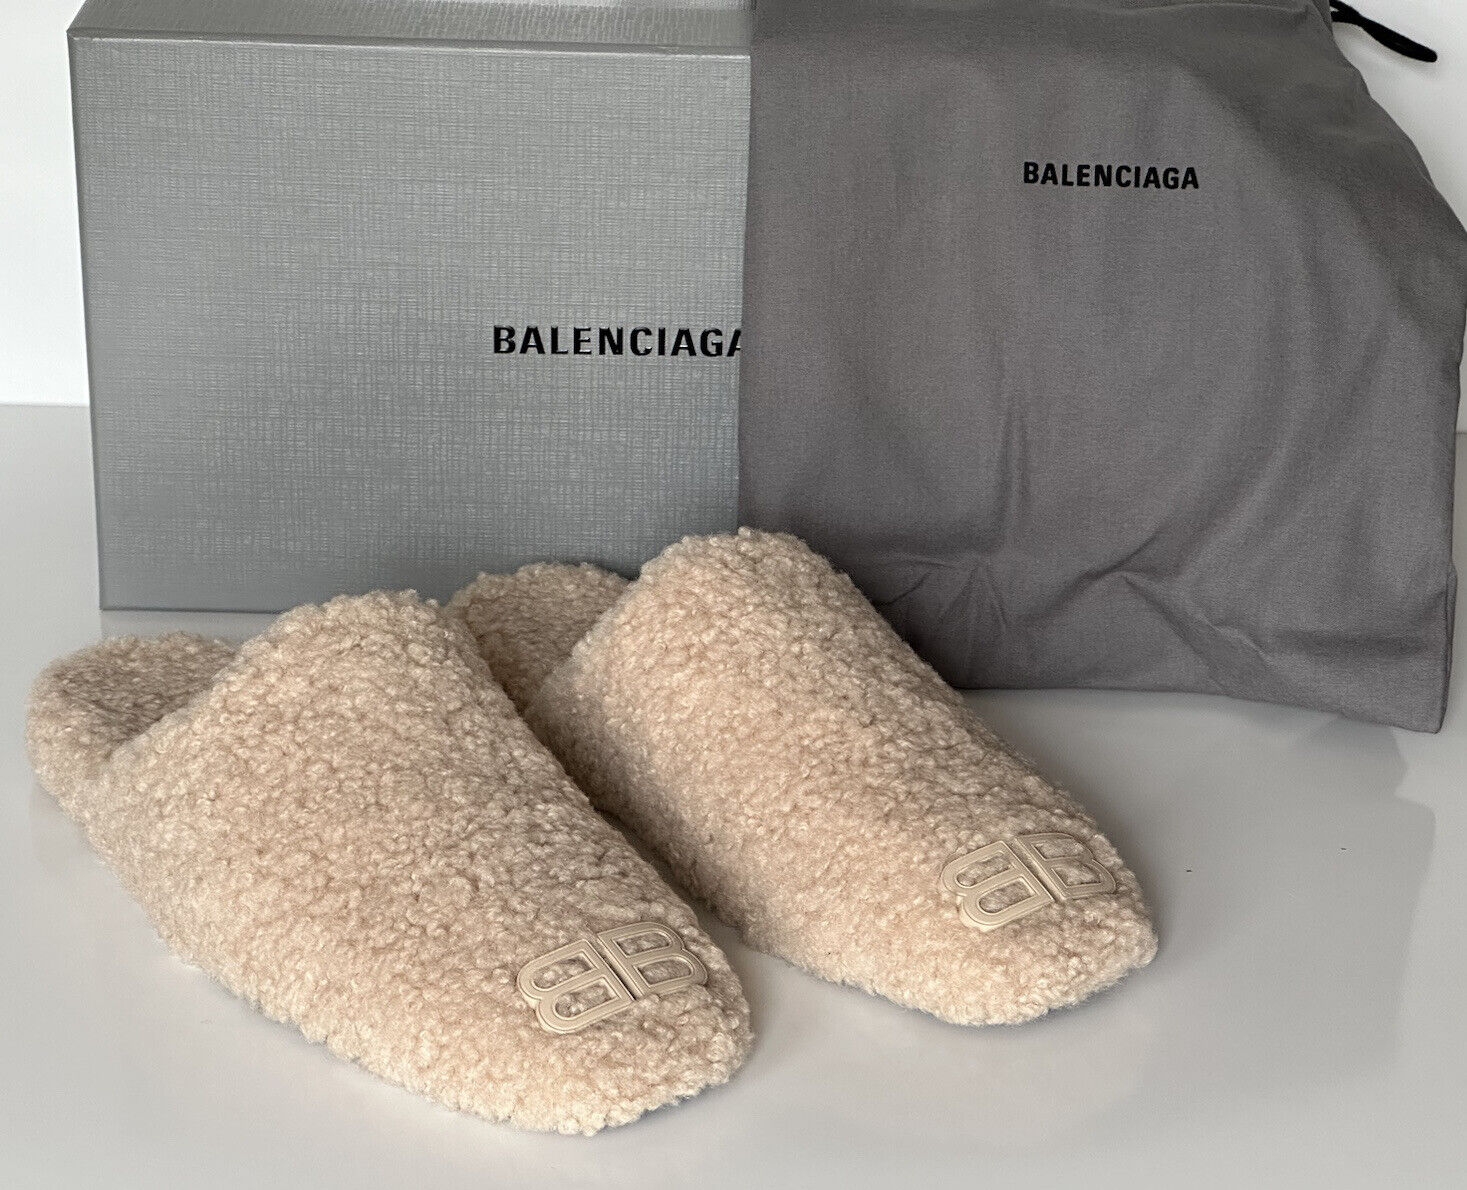 NIB 750 $ Balenciaga Herren-Pantoletten aus Lammfellimitat Beige 10 US (43 Euro) IT 67256 